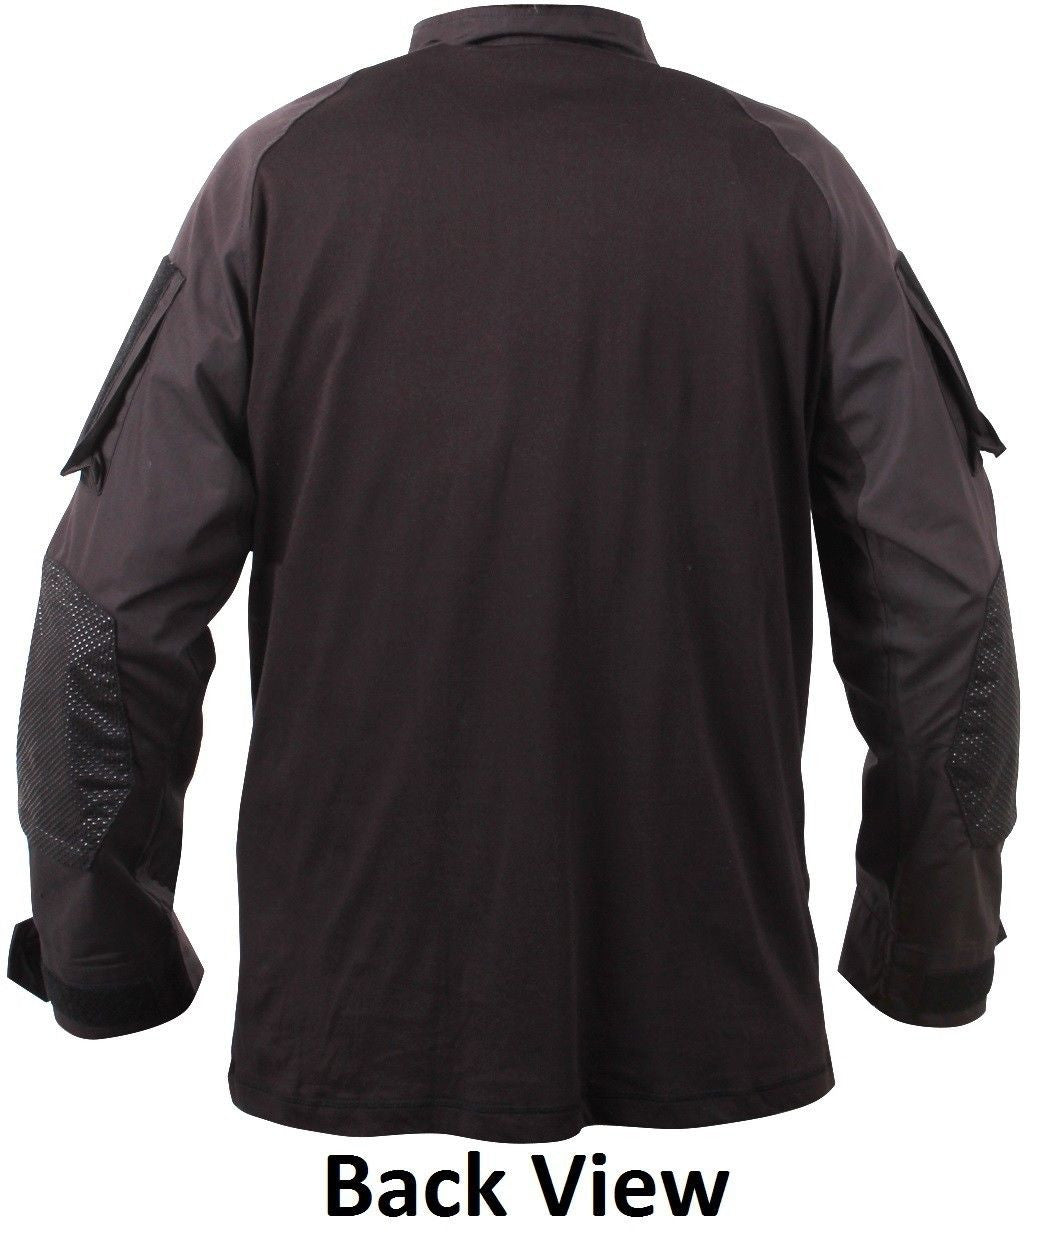 Men's Black Quarter-Zip Tactical Combat Shirt